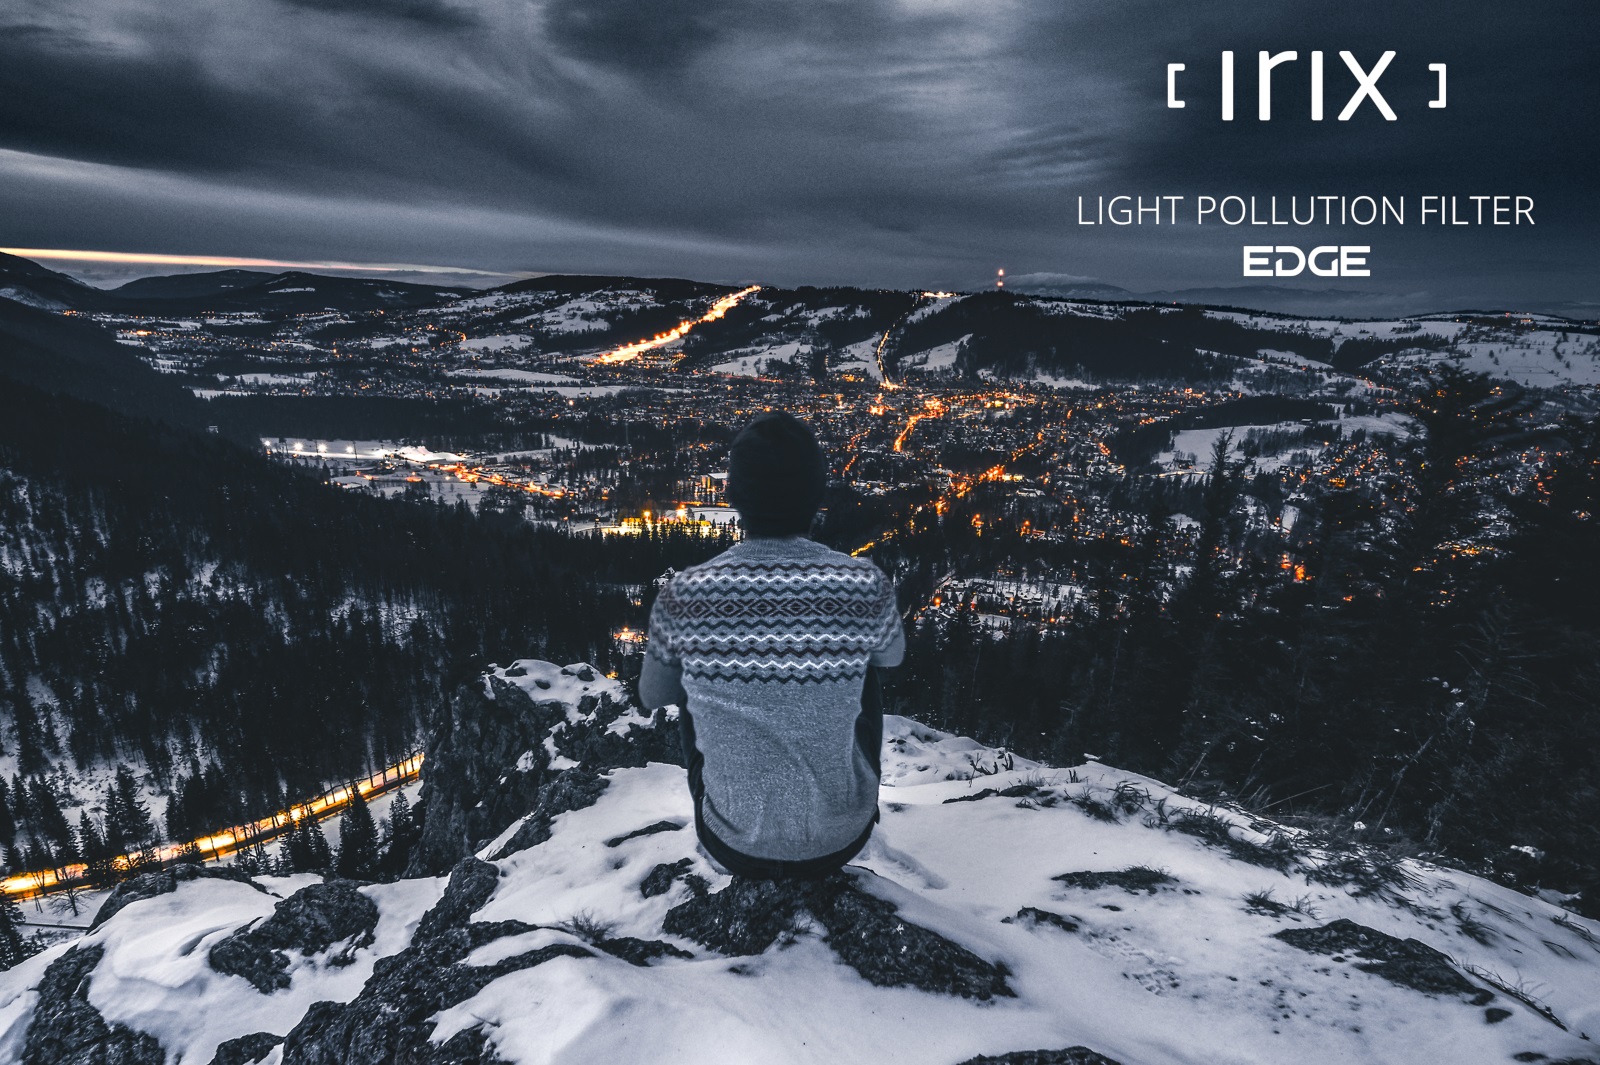 Irix Edge filtro de contaminación lumínica 77mm